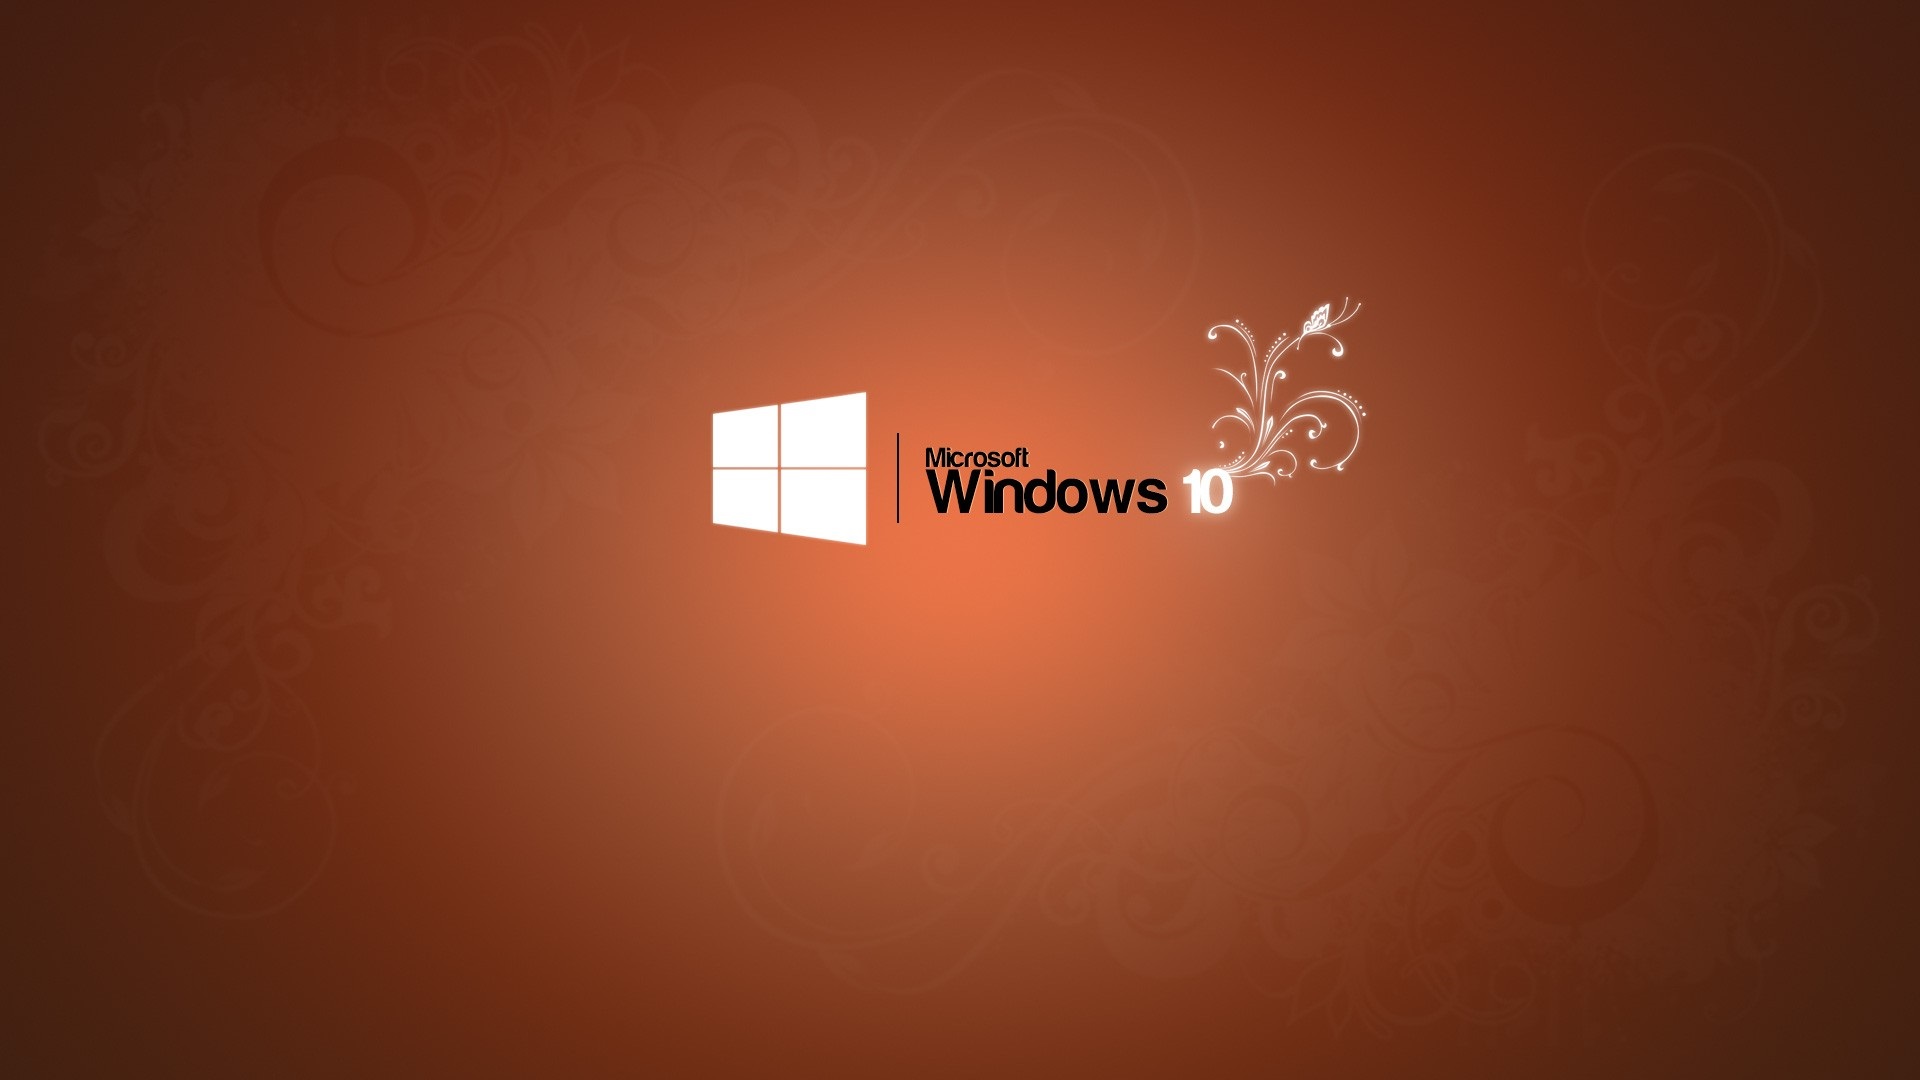 Bạn muốn có logo Microsoft Windows 10 nền màu cam cho thiết bị của mình? Đừng bỏ lỡ cơ hội tải ngay bức ảnh đẹp và độc đáo này, để thiết bị của bạn trở nên nổi bật hơn.